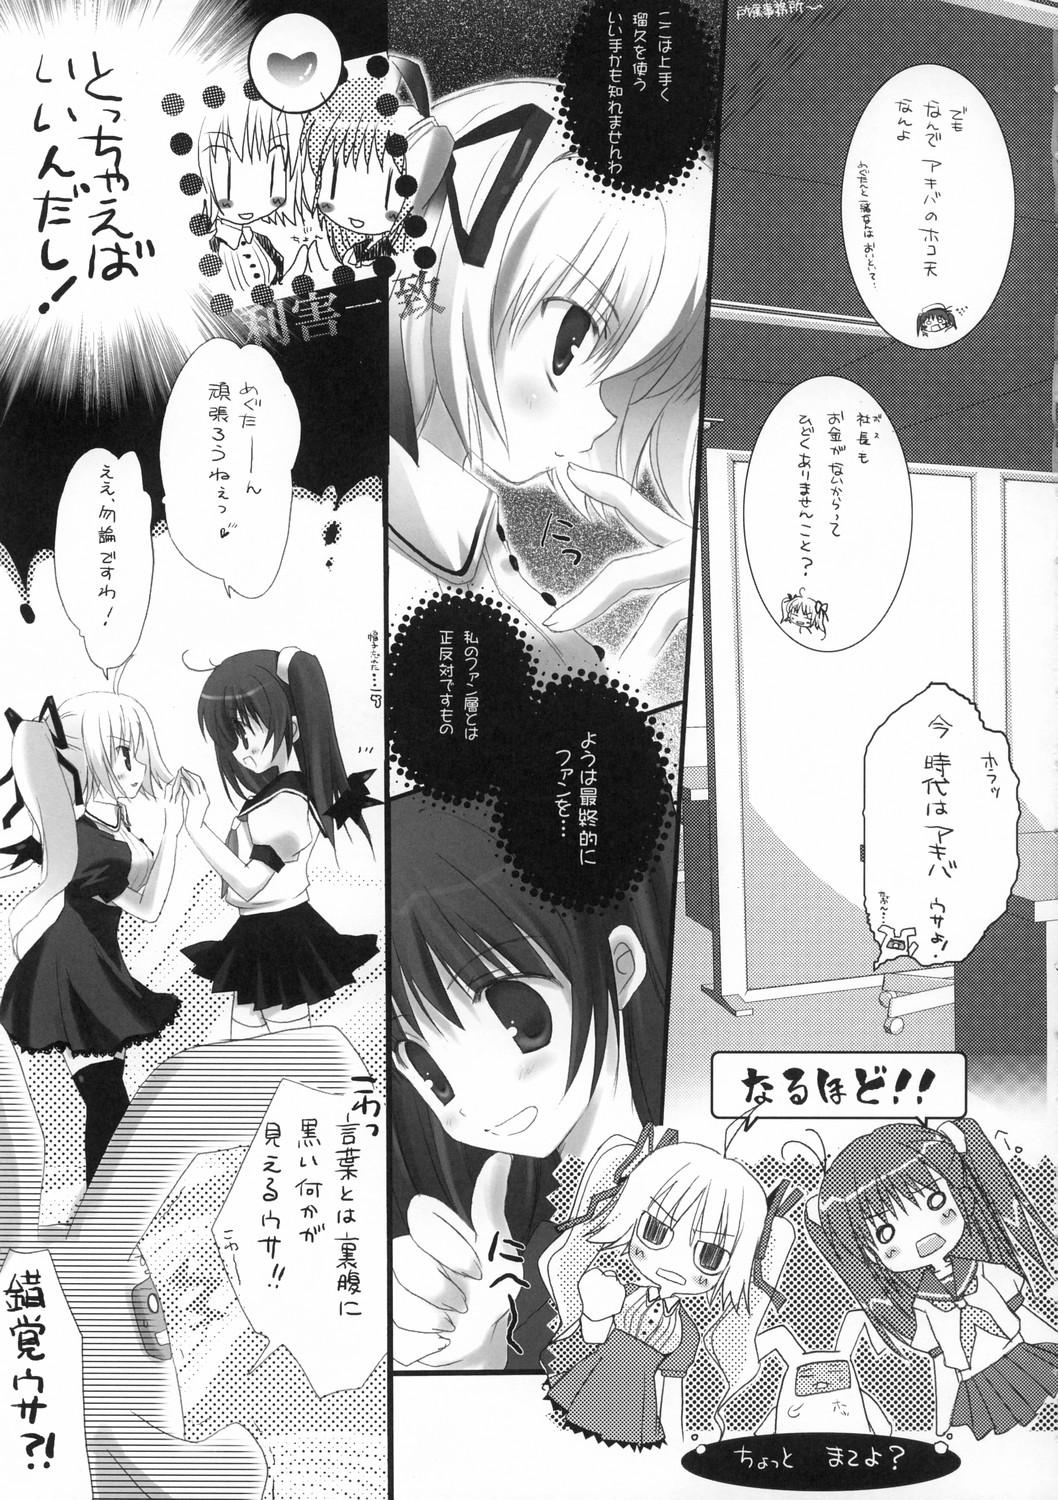 Soapy Megumirukyu Tease - Page 6